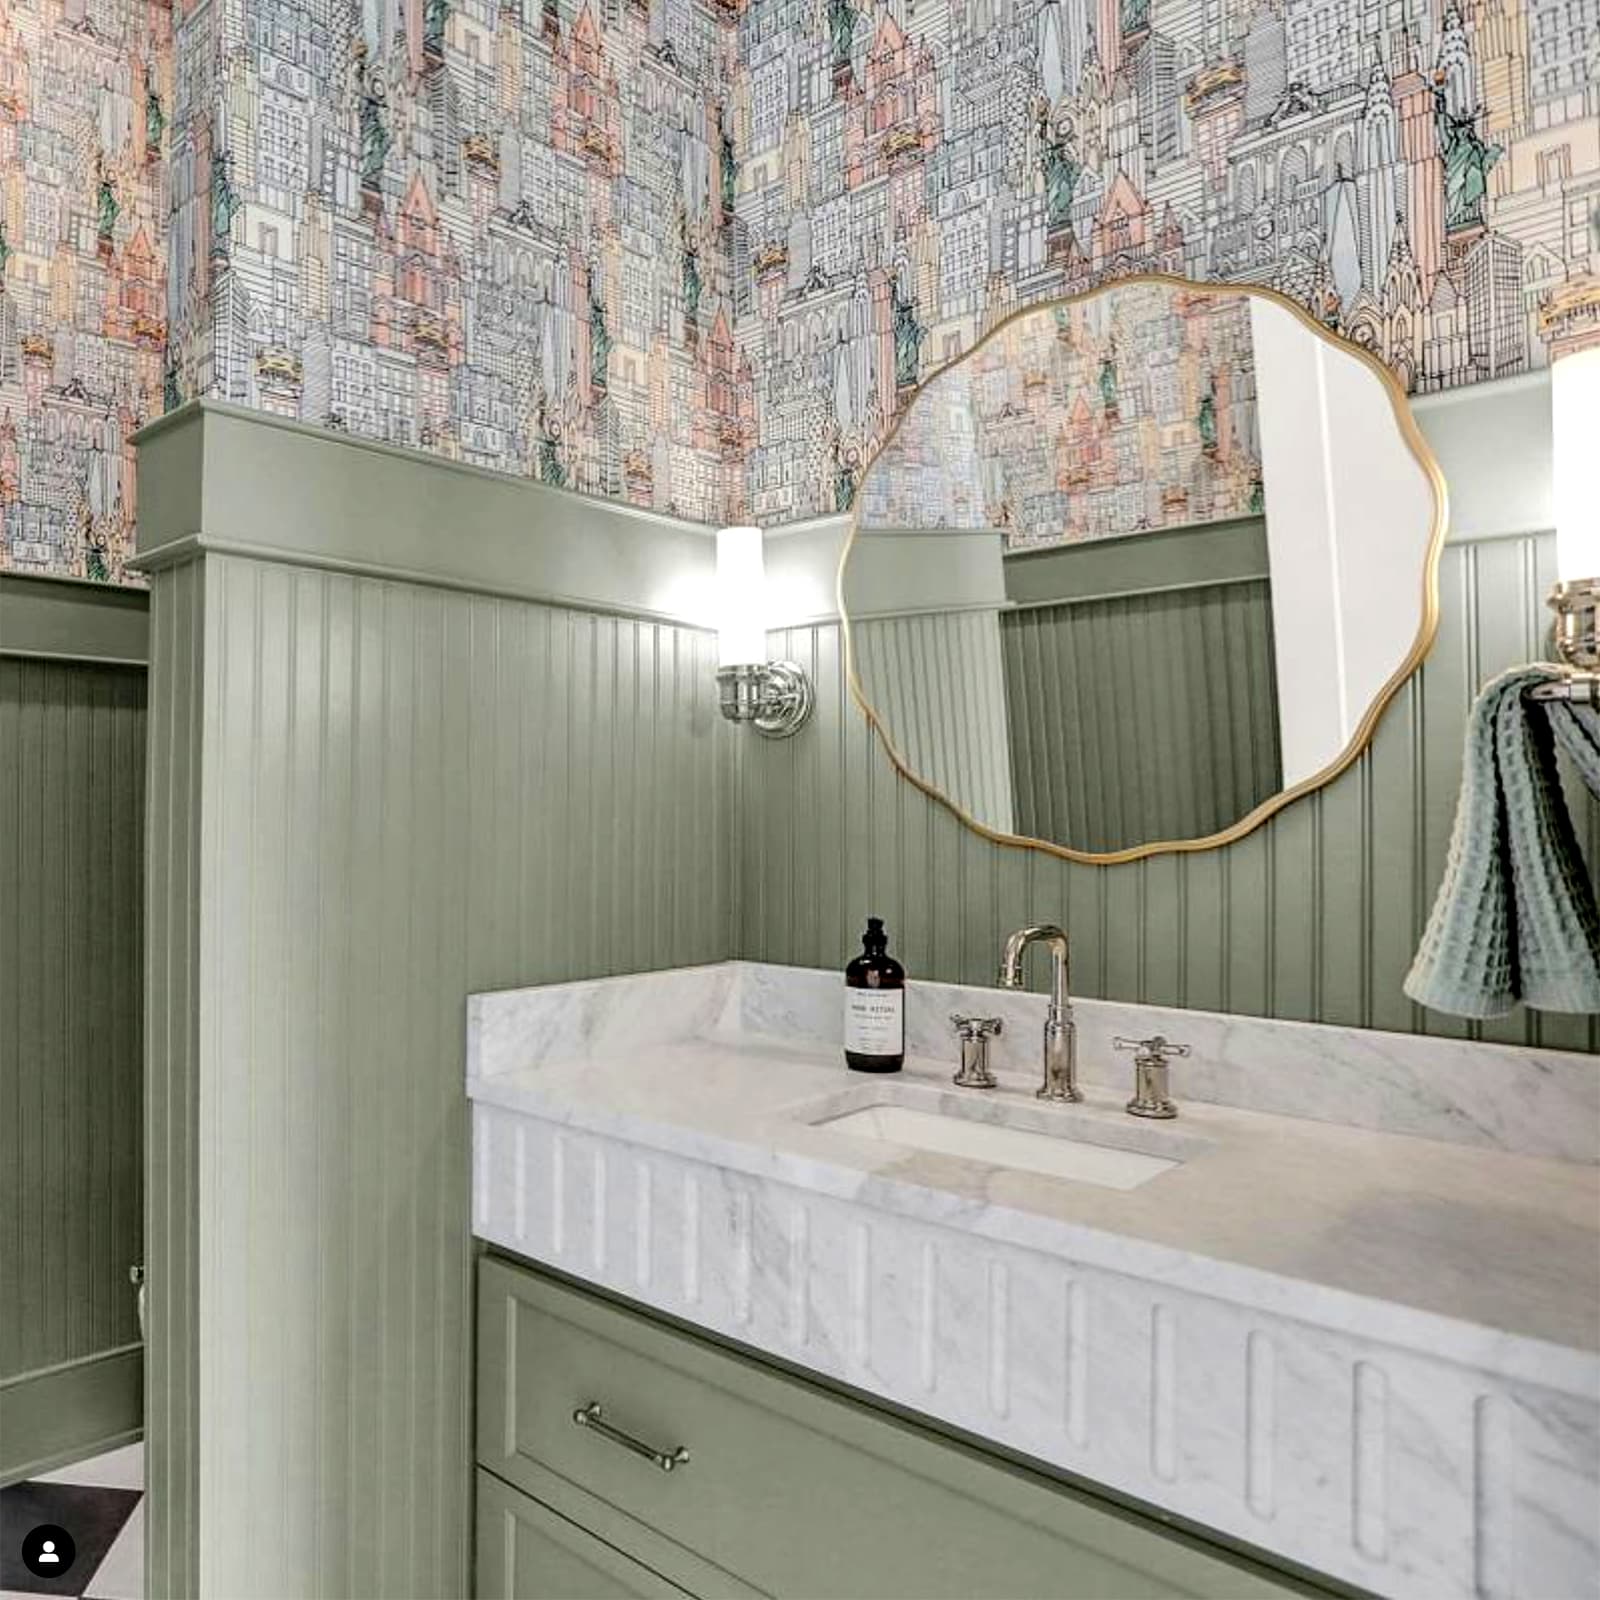 Spa-Inspired Bathrooms are En Vogue